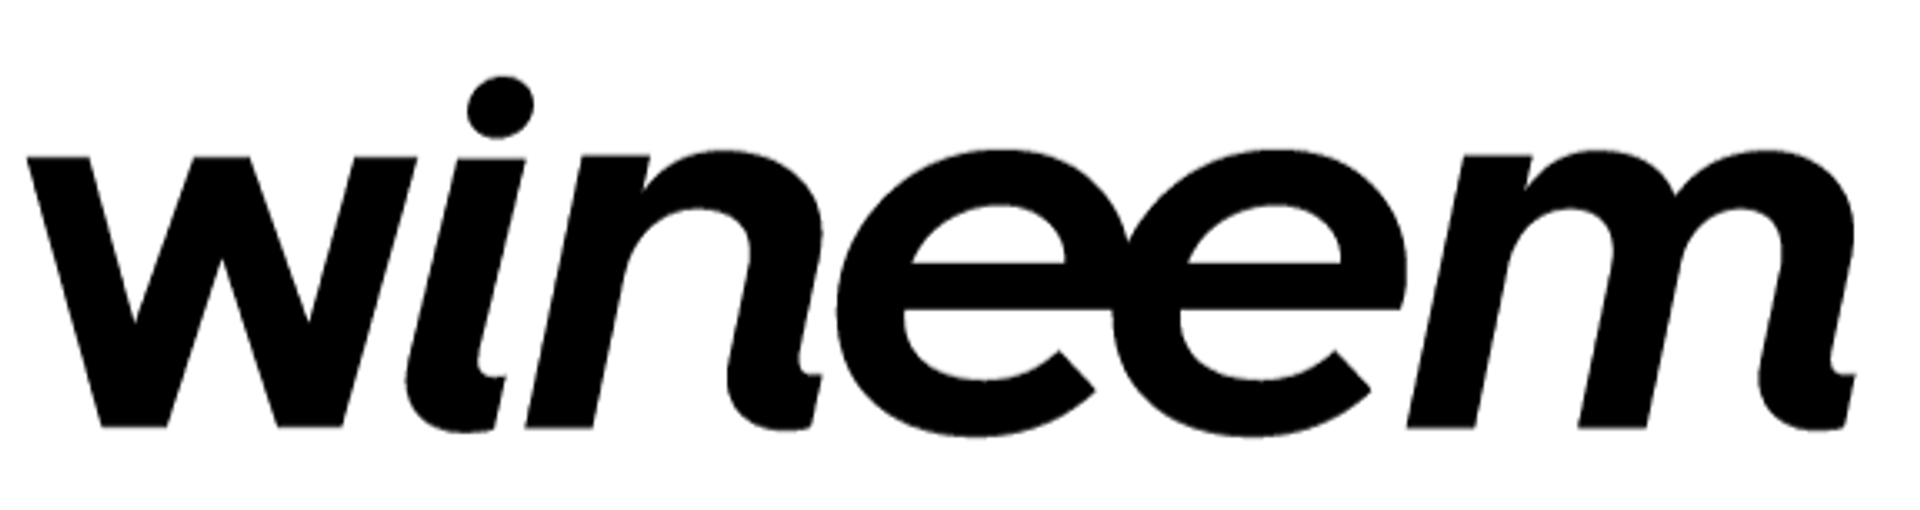 WINEEM logo